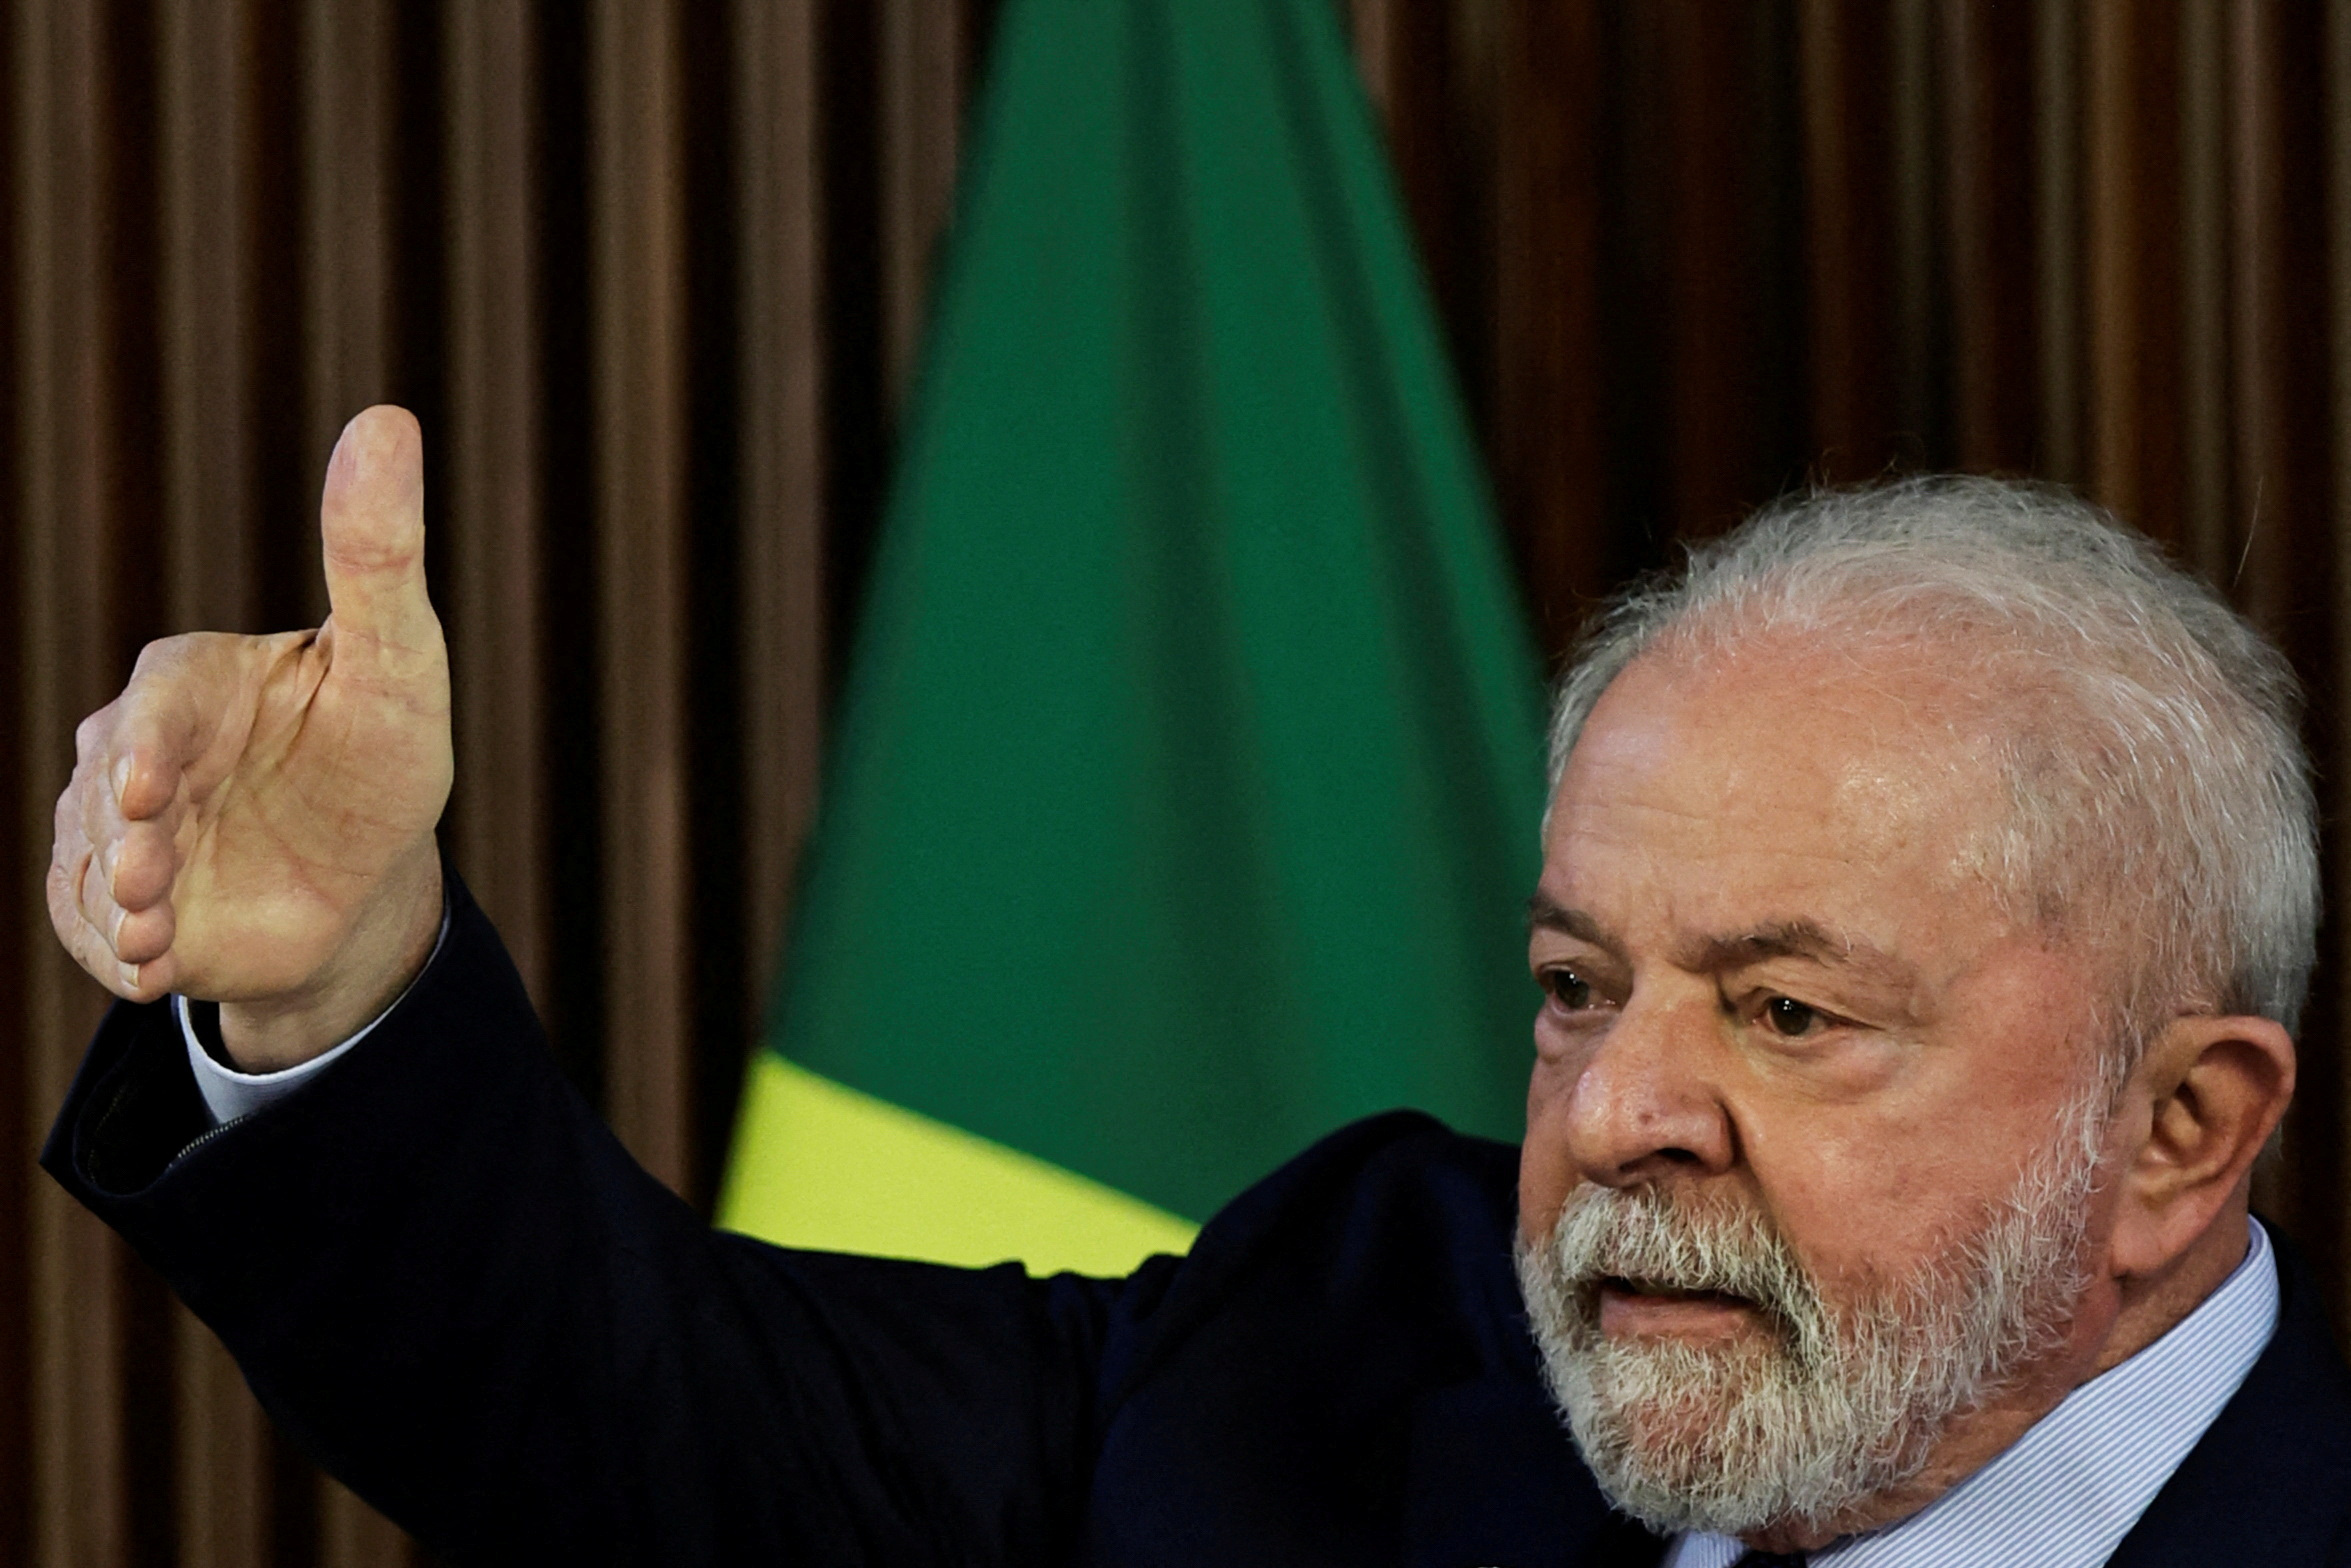 FOTO DE ARCHIVO: El presidente de Brasil, Luiz Inacio Lula da Silva, gesticula durante una reunión con los gobernadores, en el Palacio Planalto en Brasilia, Brasil, el 27 de enero de 2023. REUTERS/Ueslei Marcelino/Foto de archivo